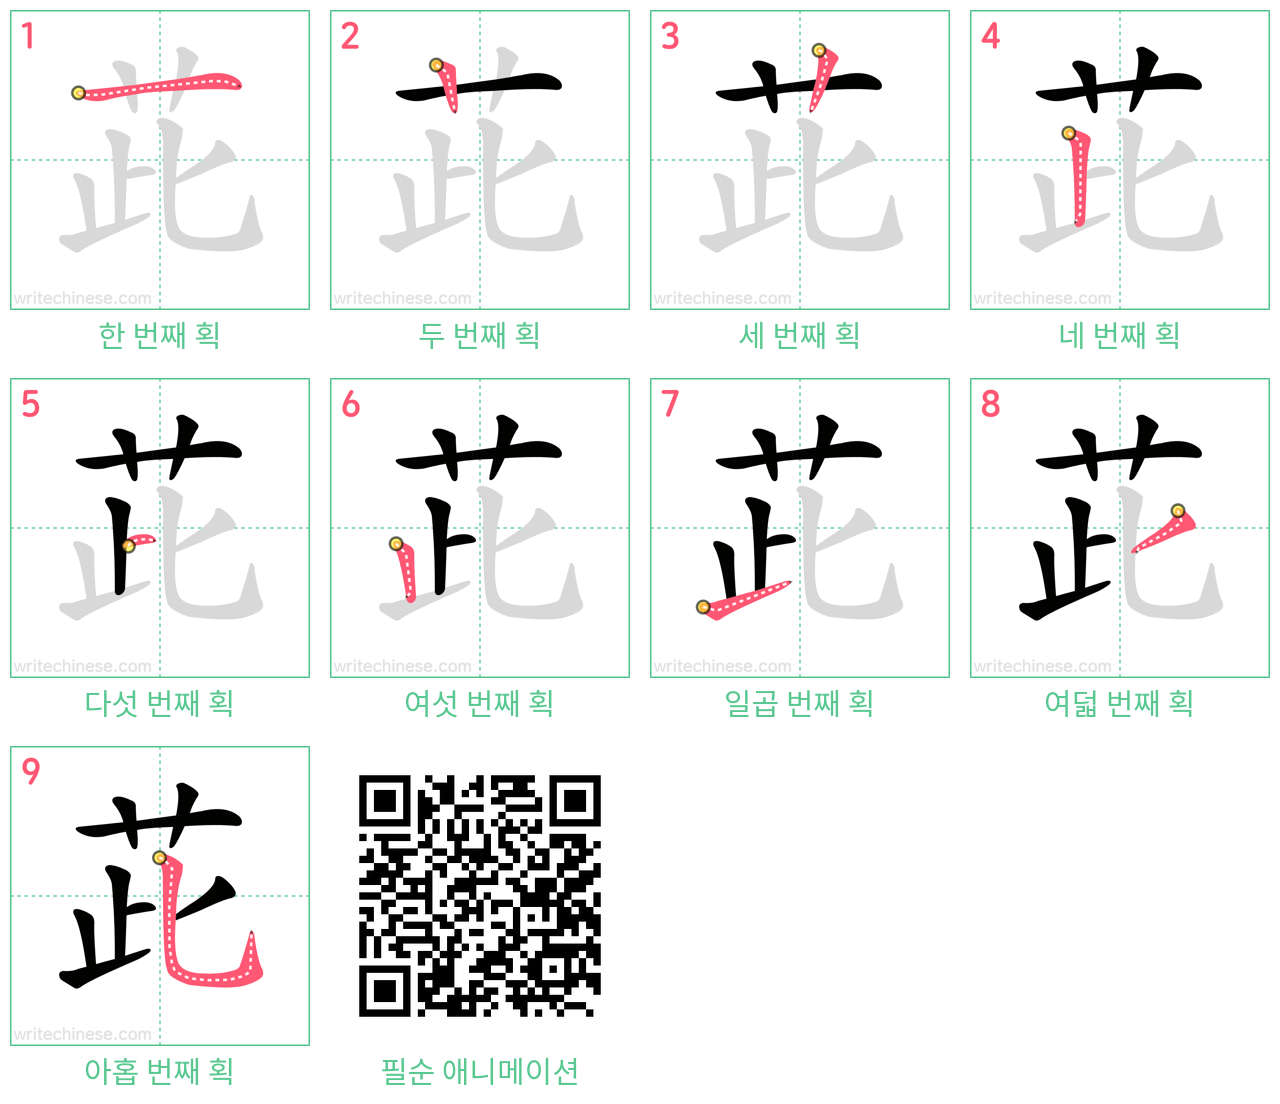 茈 step-by-step stroke order diagrams